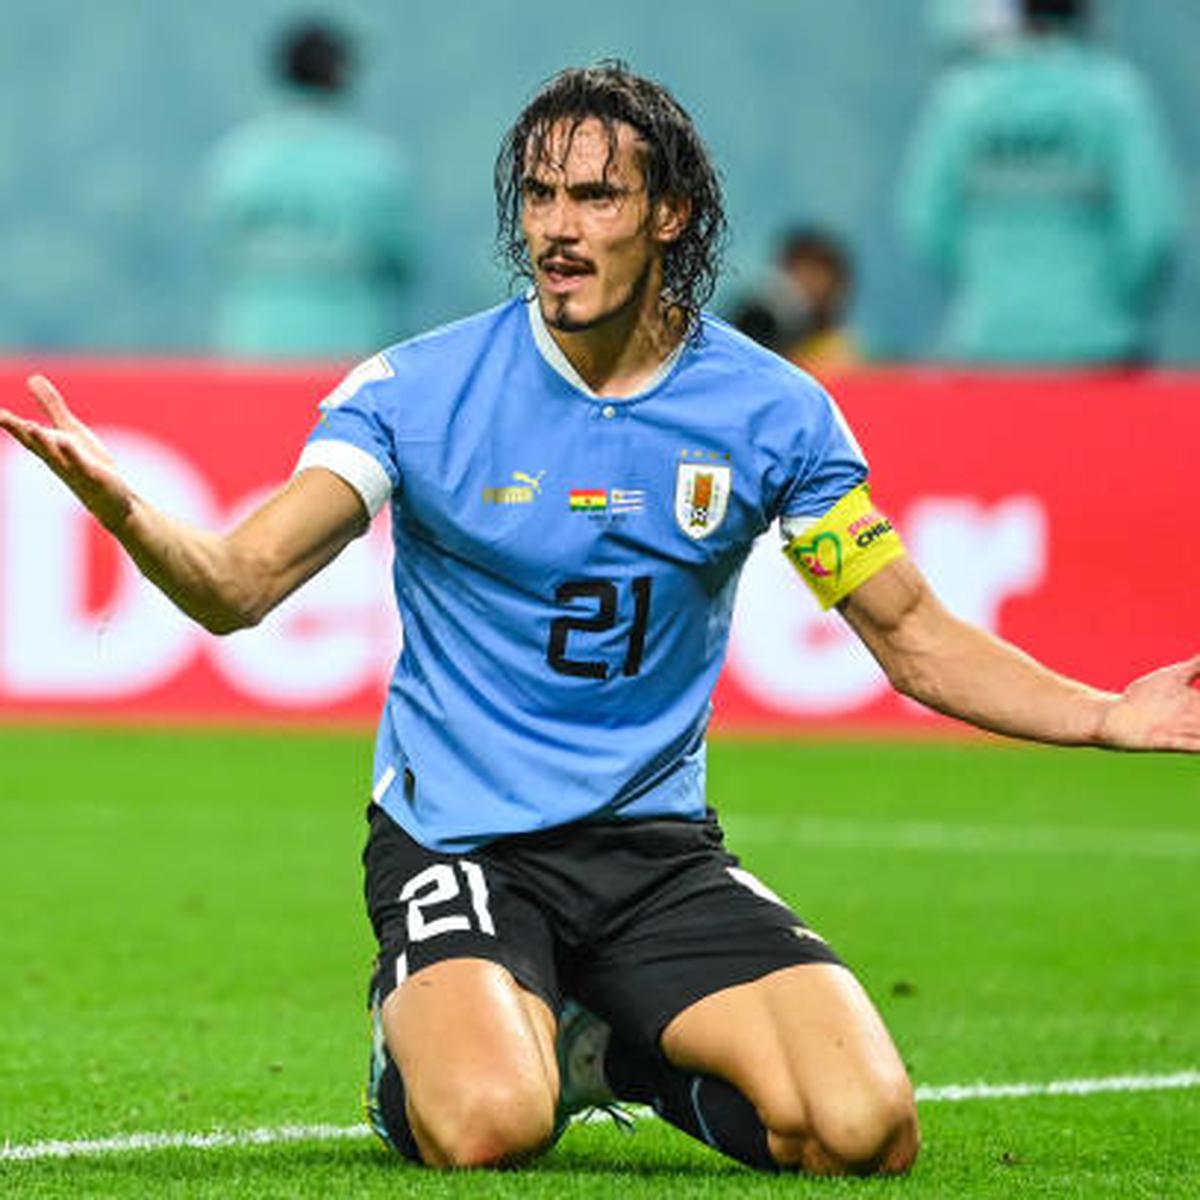 Así nos va - 🇺🇾 ¡Hoy juega Uruguay! 🇺🇾 Por eso Así nos va le da paso a  la transmisión de Fútbol por Carve, para que tengas el minuto a minuto del